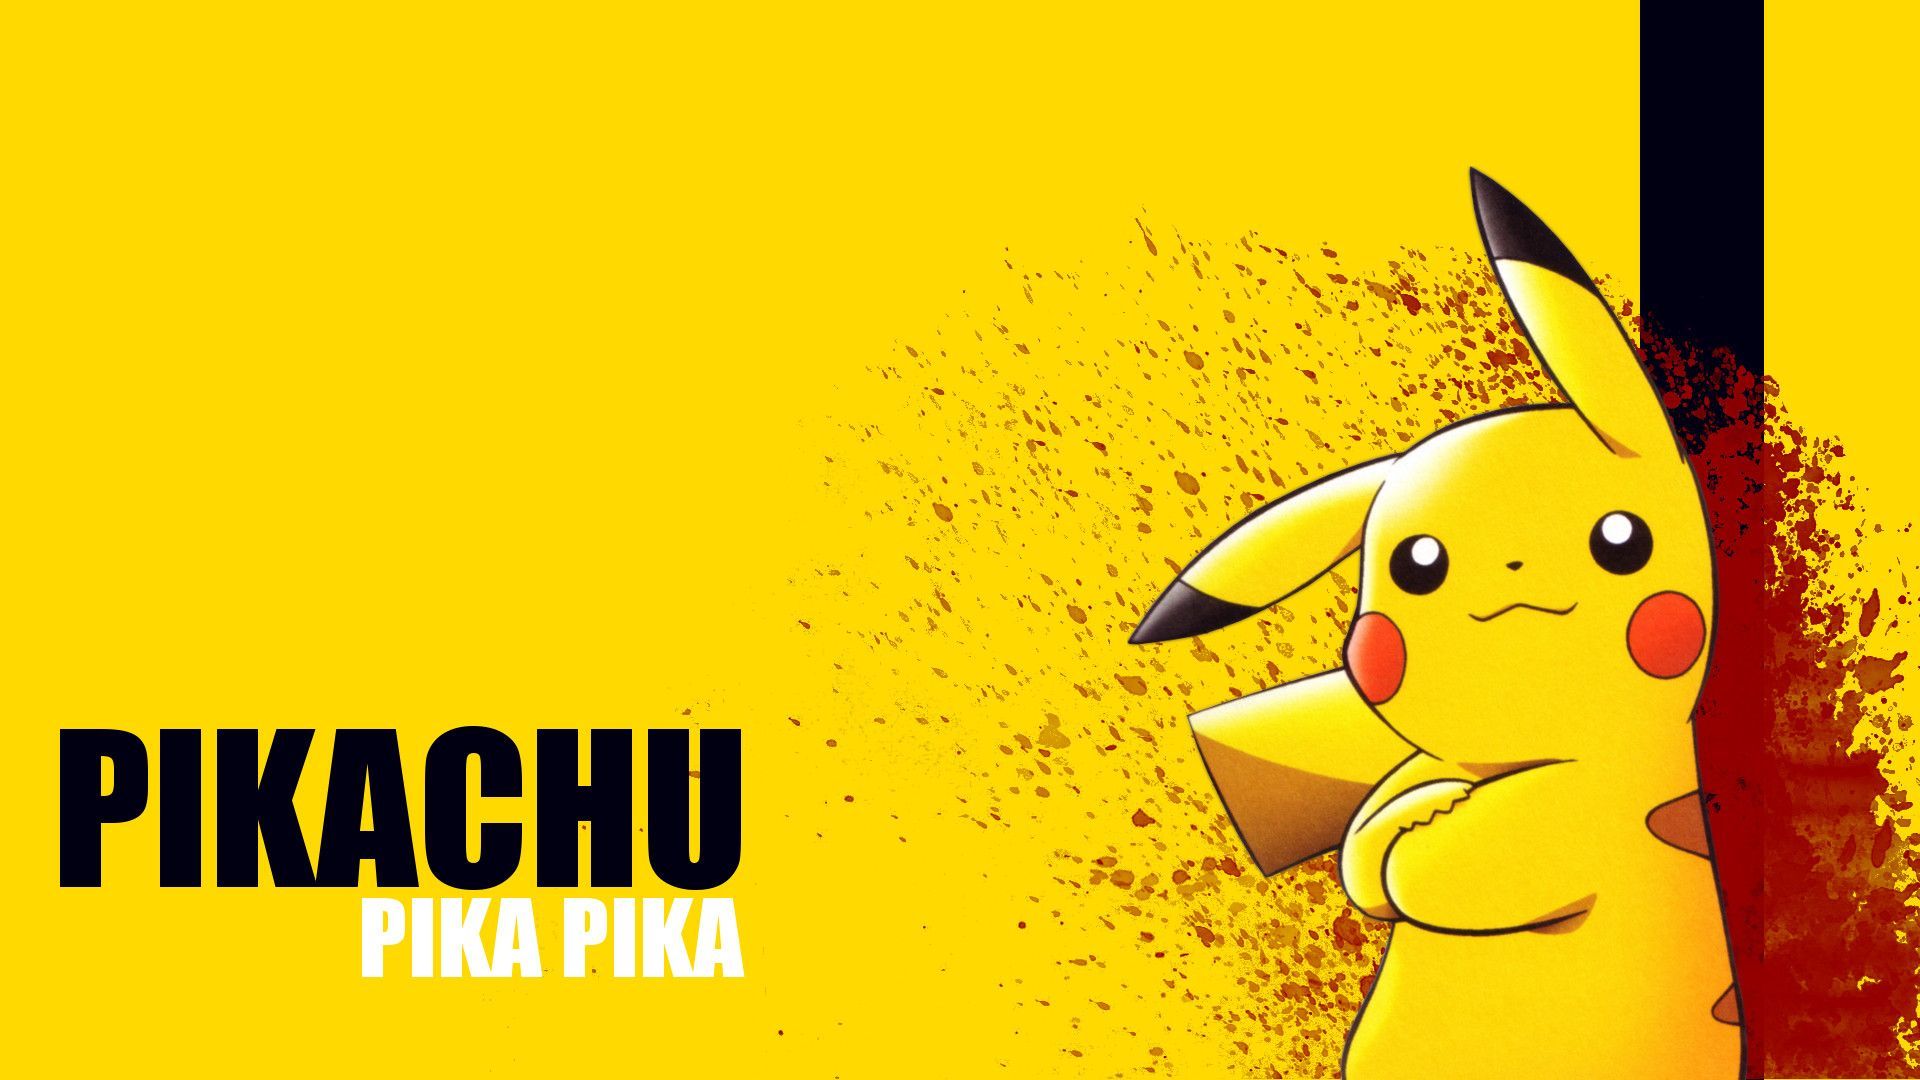 Bộ hình nền Pokemon Pikachu cute cho máy tính  GameVuivn